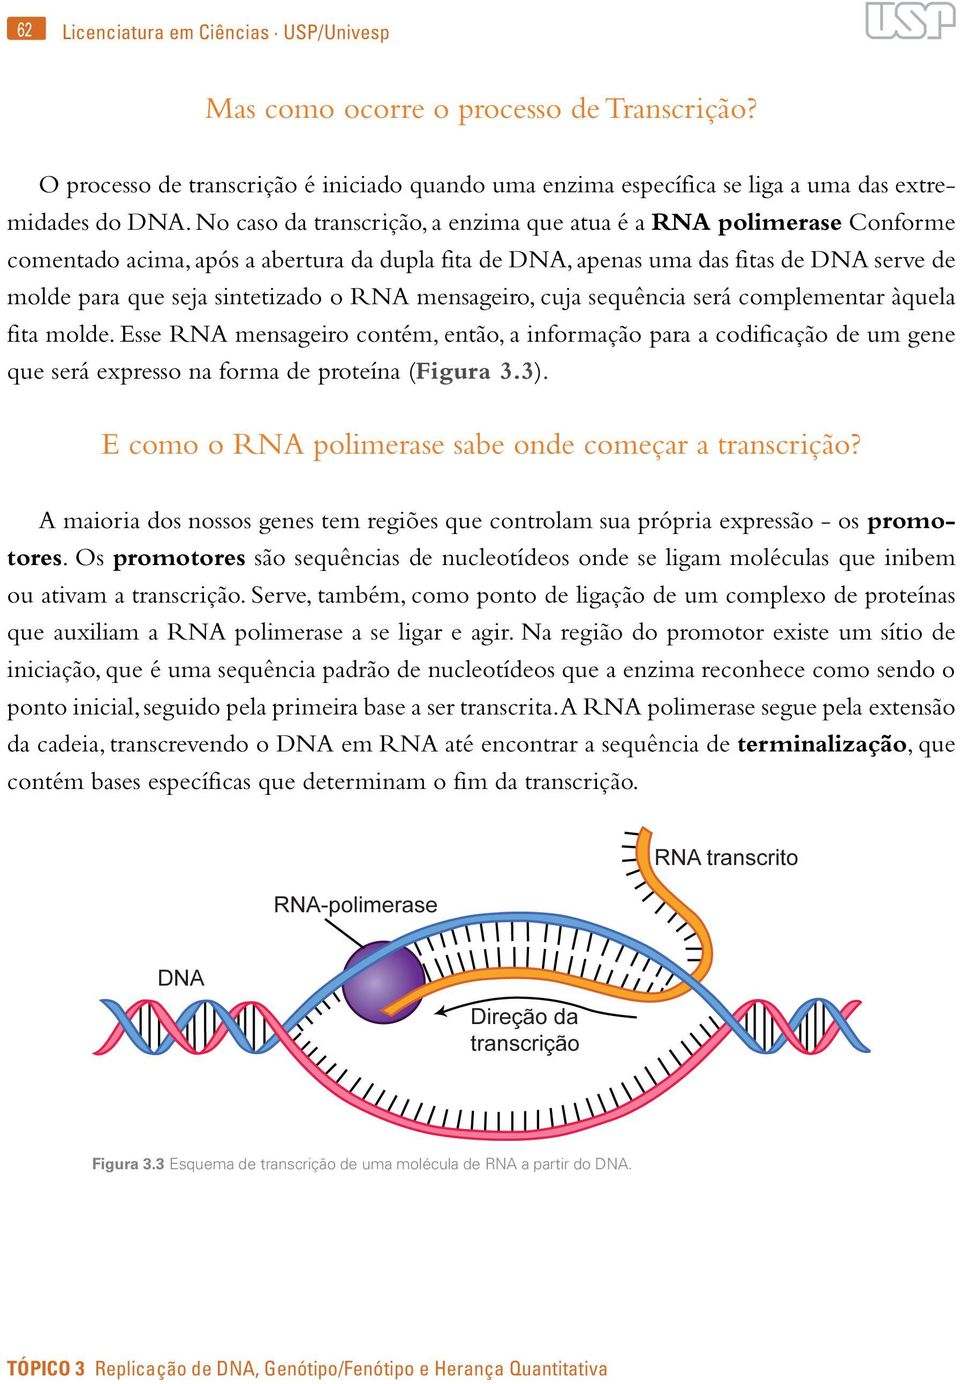 mensageiro, cuja sequência será complementar àquela fita molde. Esse RNA mensageiro contém, então, a informação para a codificação de um gene que será expresso na forma de proteína (Figura 3.3).